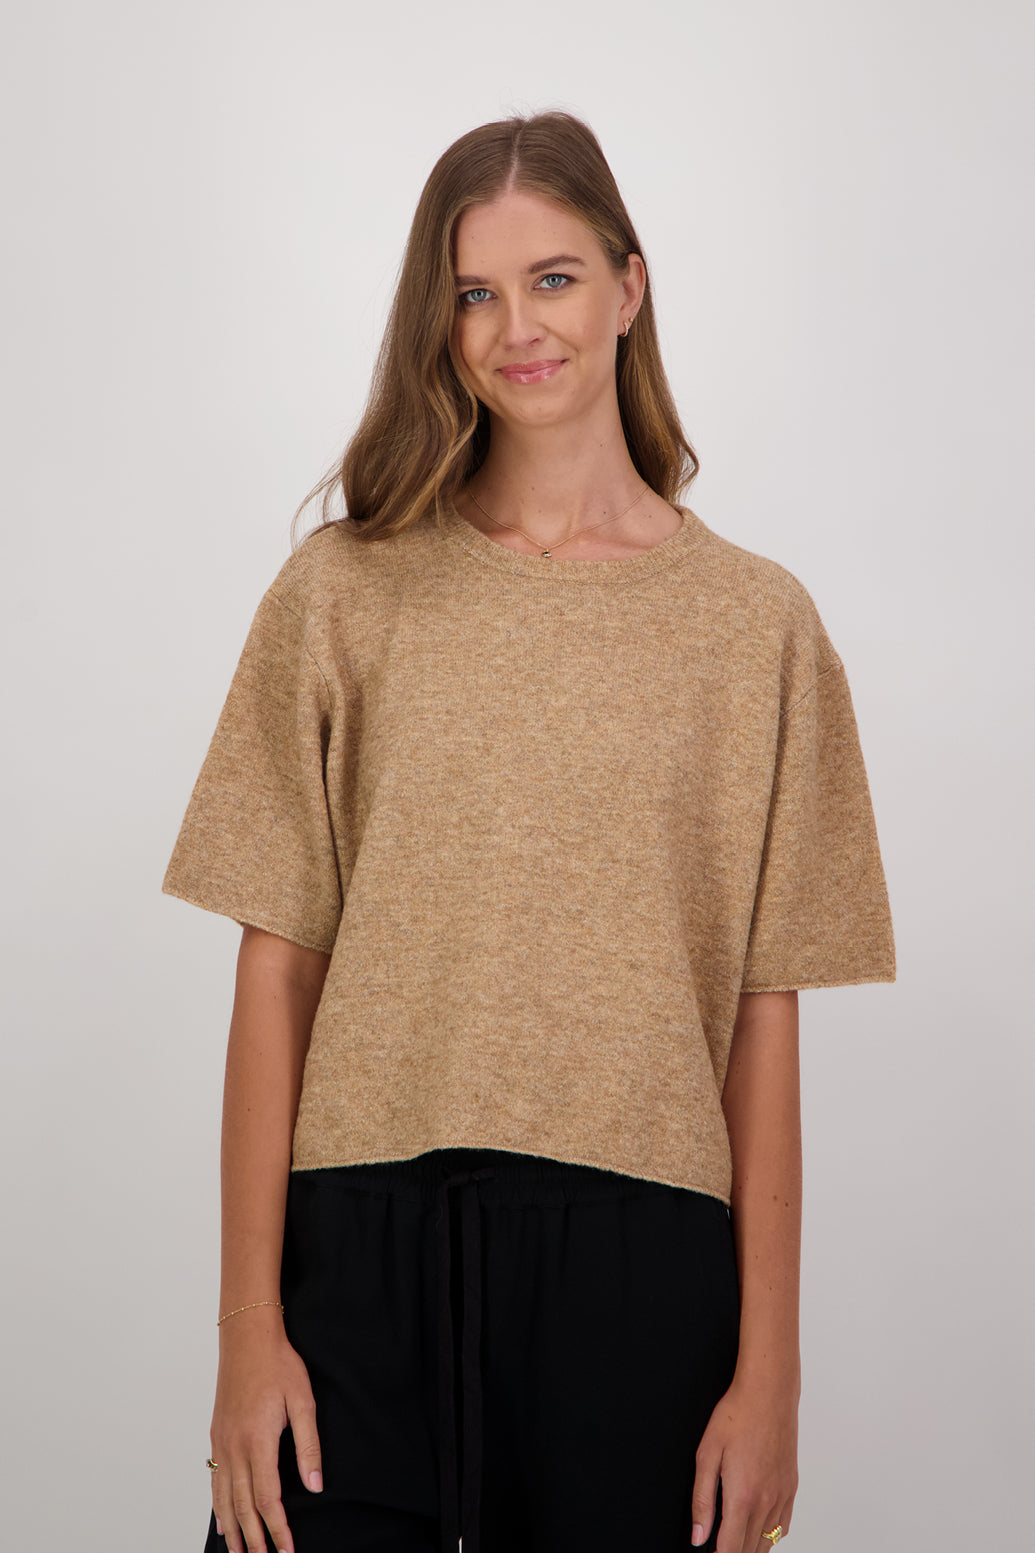 Dapper Wool Blend Short Sleeve Top/T-Shirt - Camel